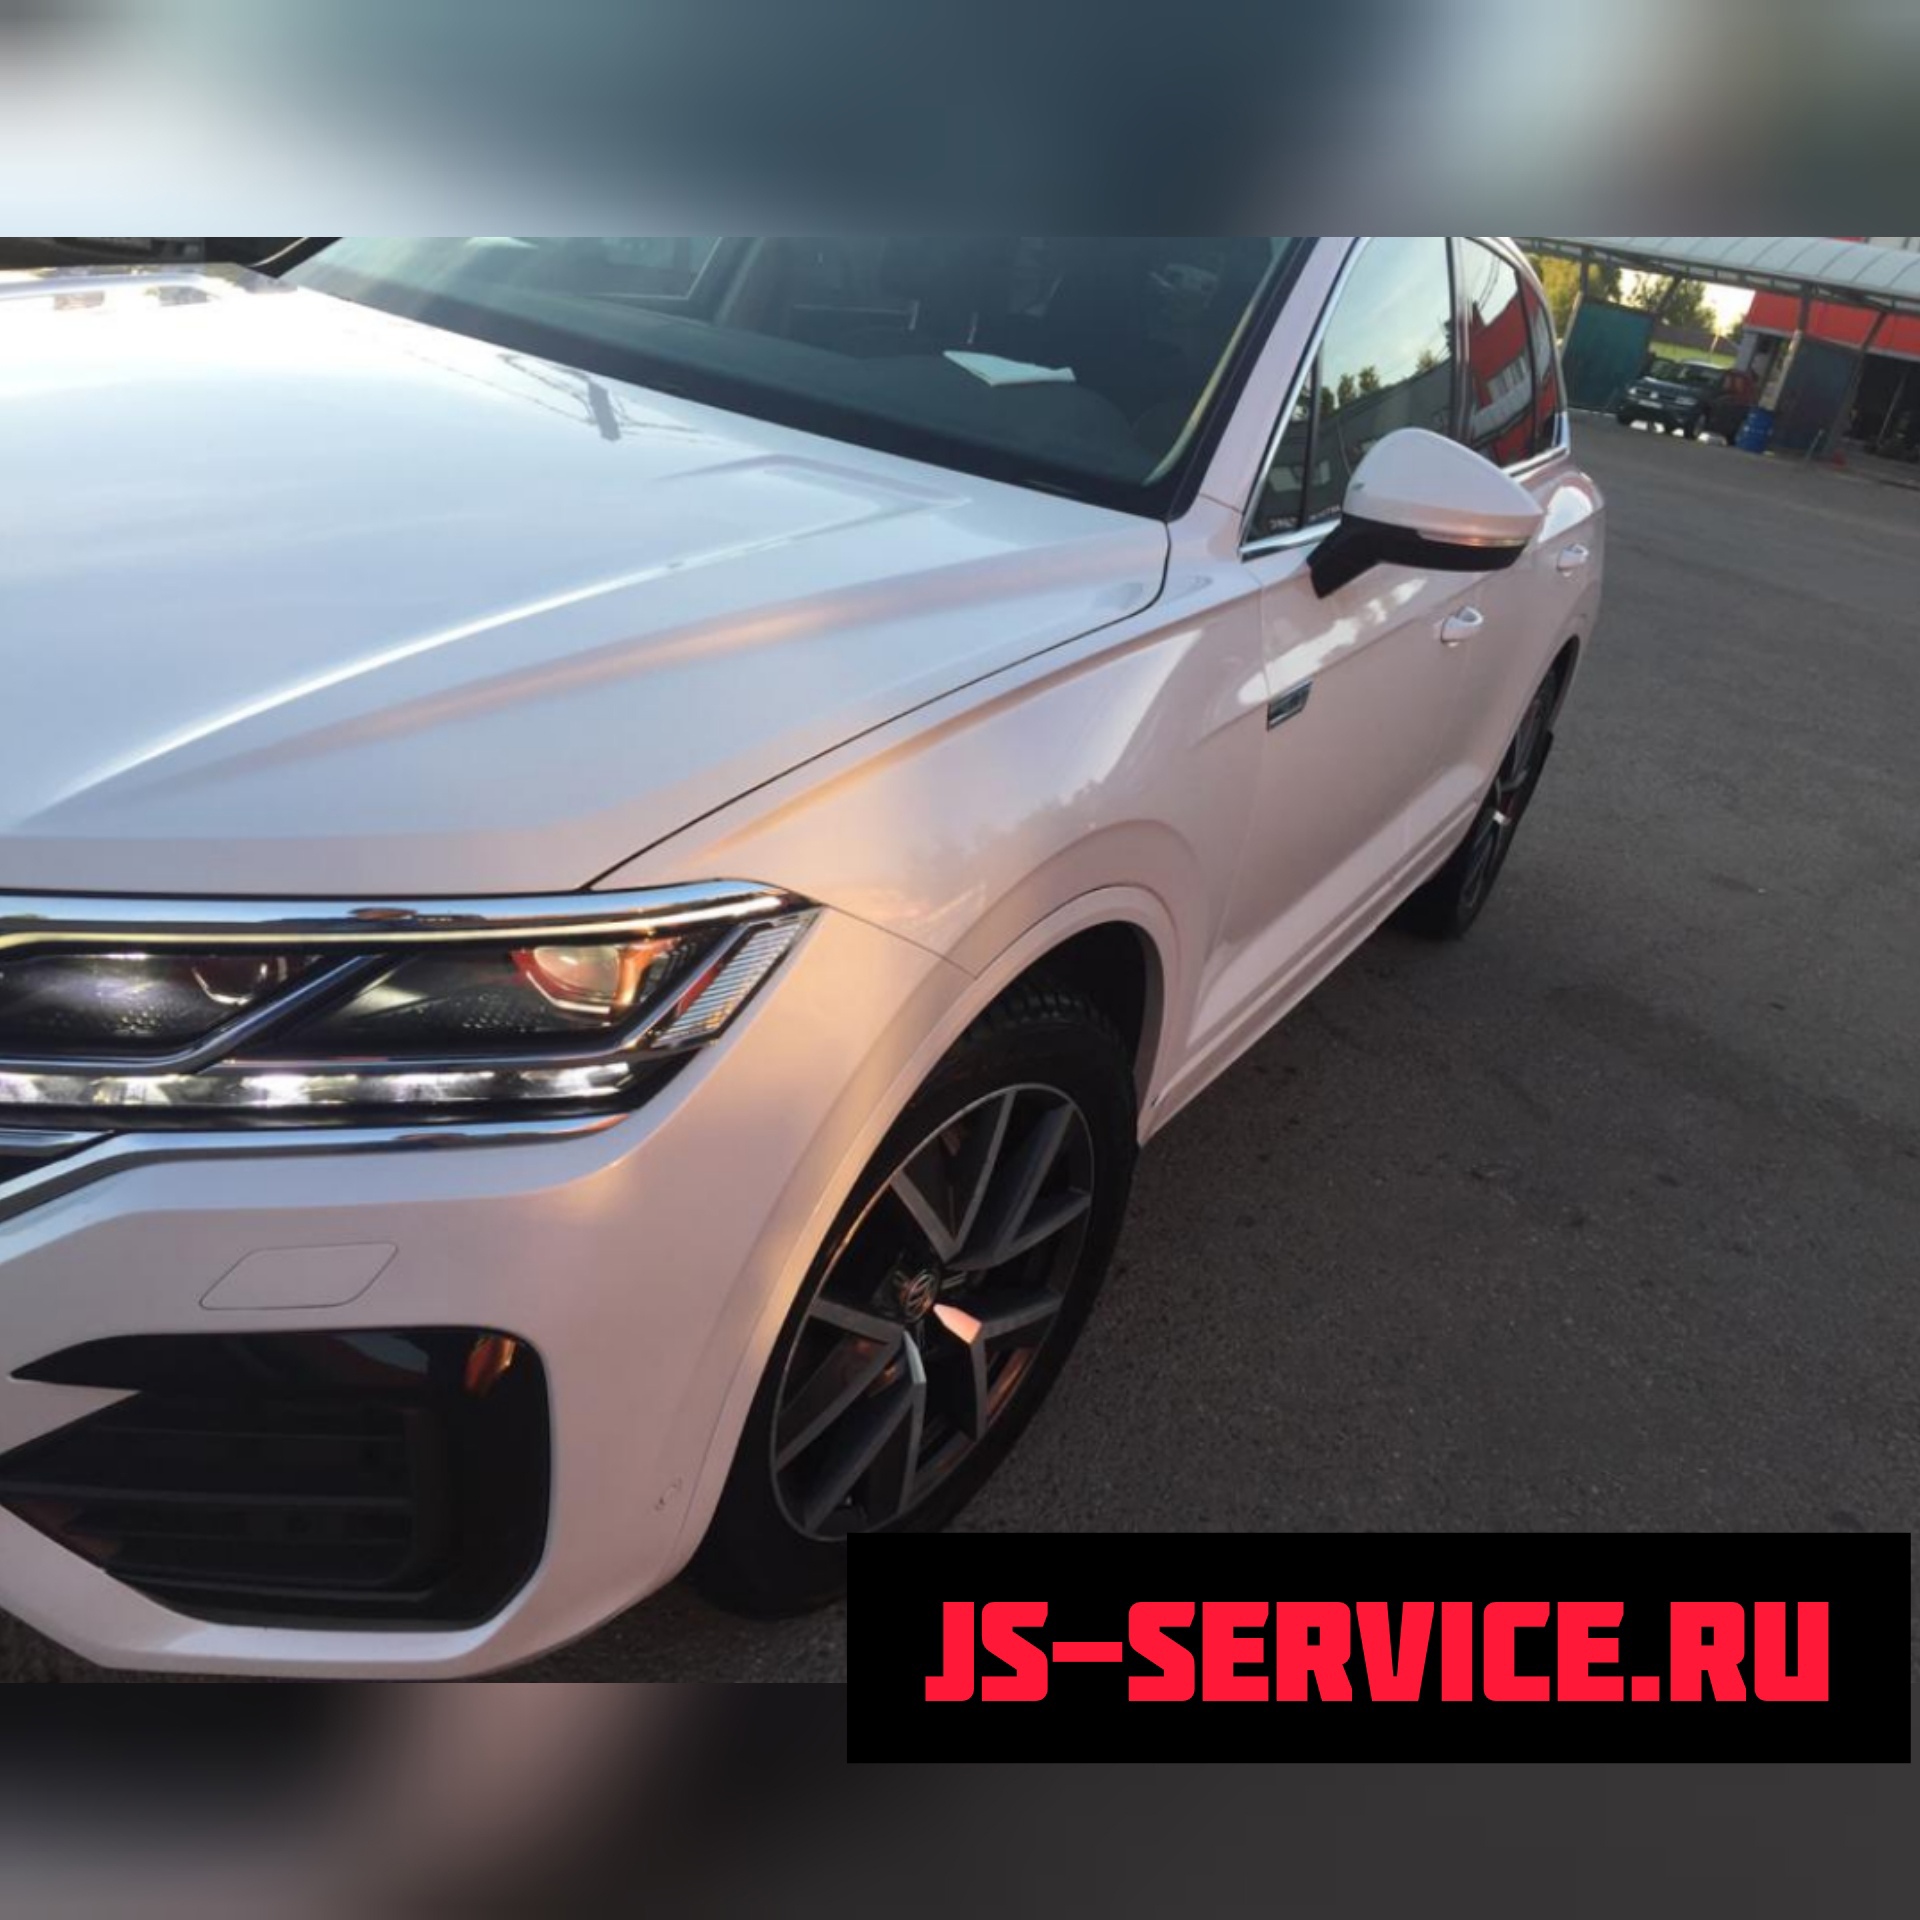 Volkswagen Touareg 2019 кузовной ремонт в филиале Колпино Js-service.ru Колпино, Рабочий переулок дом 3.